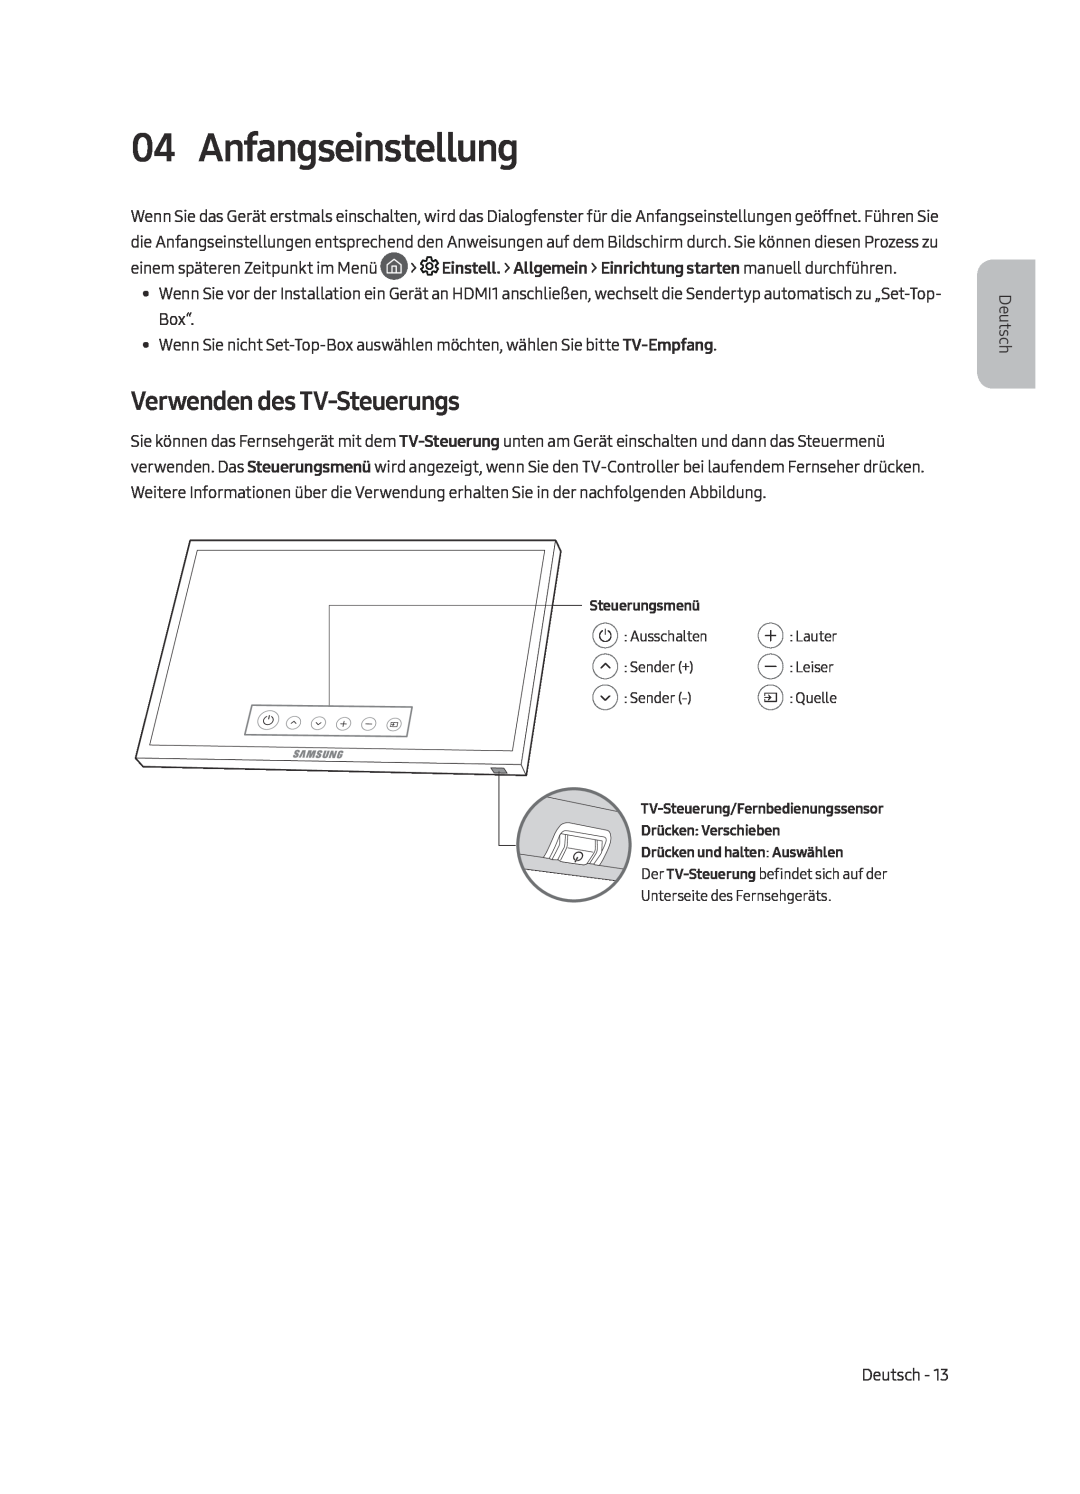 Samsung UE55MU7049TXZG, UE49MU7049TXZG, UE49MU7079TXZG, UE49MU7059TXZG manual Anfangseinstellung, Verwenden des TV-Steuerungs 